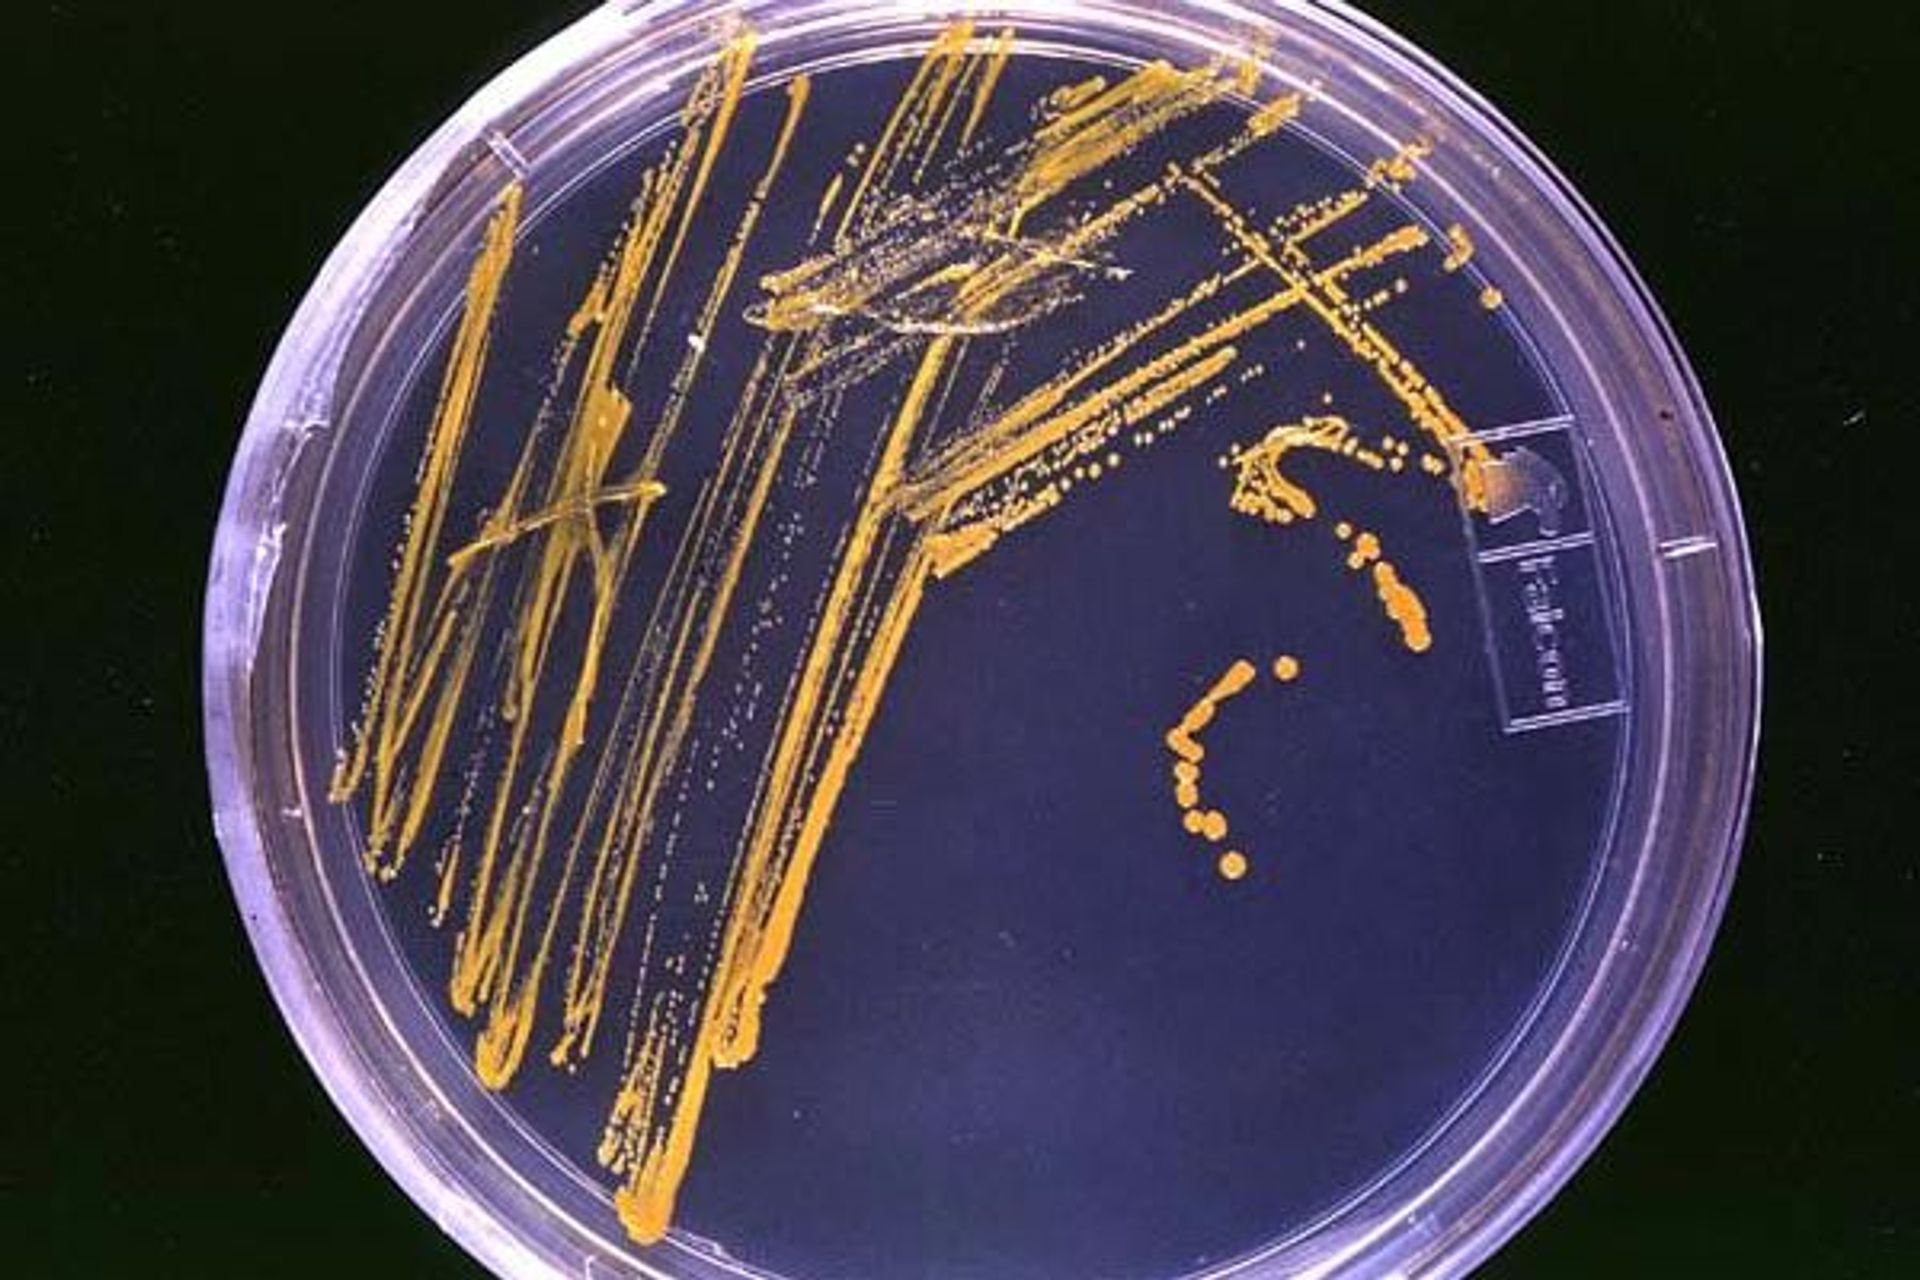 La capsula di Petri prende il nome dal batteriologo Julius Richard Petri, assistente di Robert Koch, che la inventò nel 1877, ed è un recipiente piatto di vetro o plastica, solitamente di forma cilindrica, che ha un diametro tra i 50 e i 100 millimetri e un'altezza di 15 mm: è un importante strumento di lavoro in molti campi della biologia, per la crescita di colture cellulari e perché permette di osservare a occhio nudo colonie batteriche